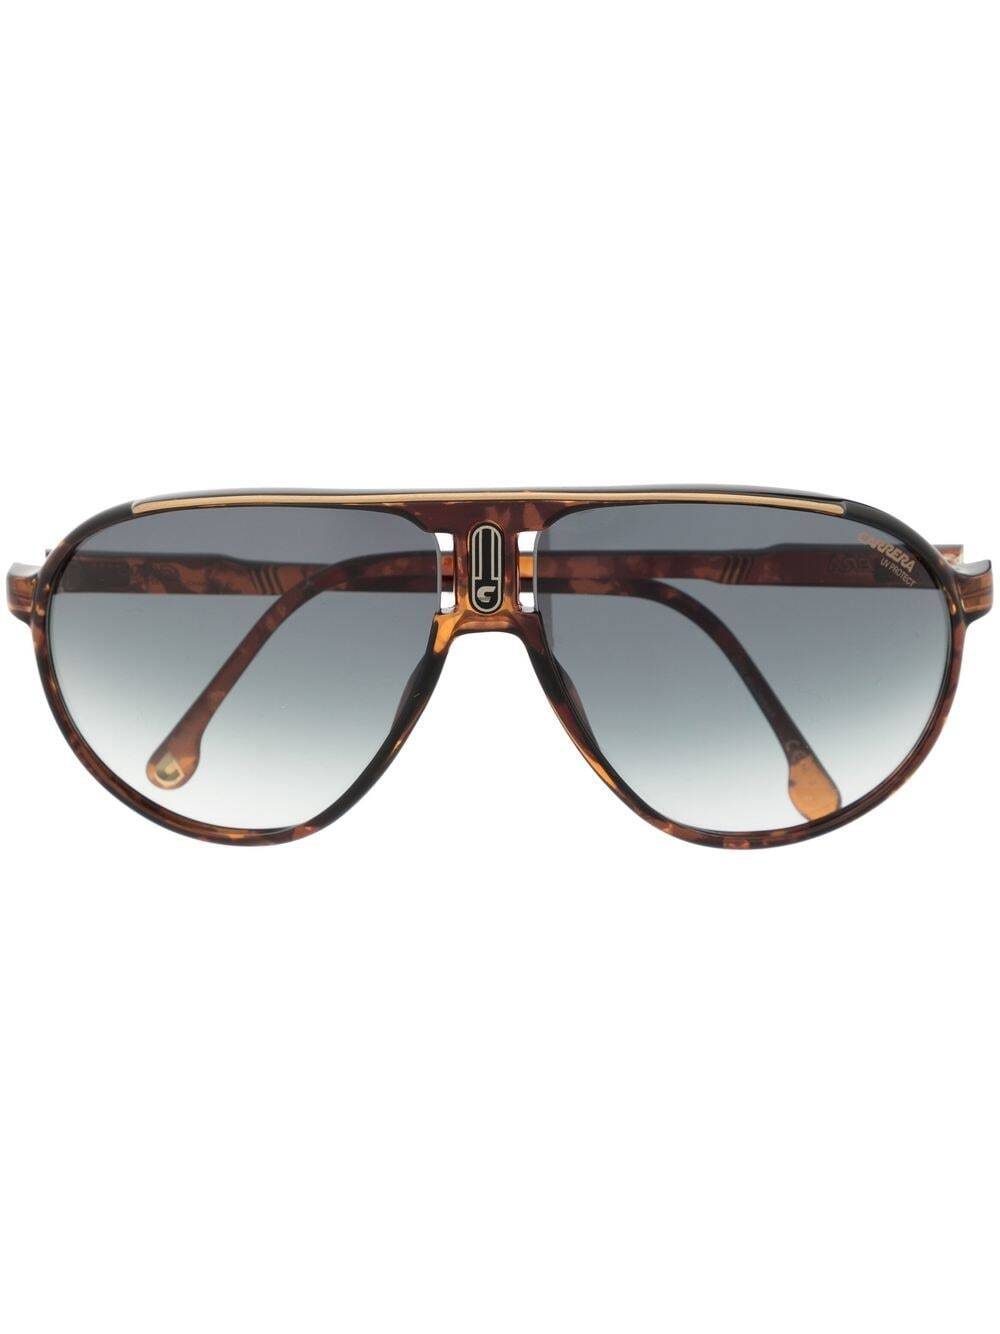 Carrera Champion 65 sunglasses - Brown